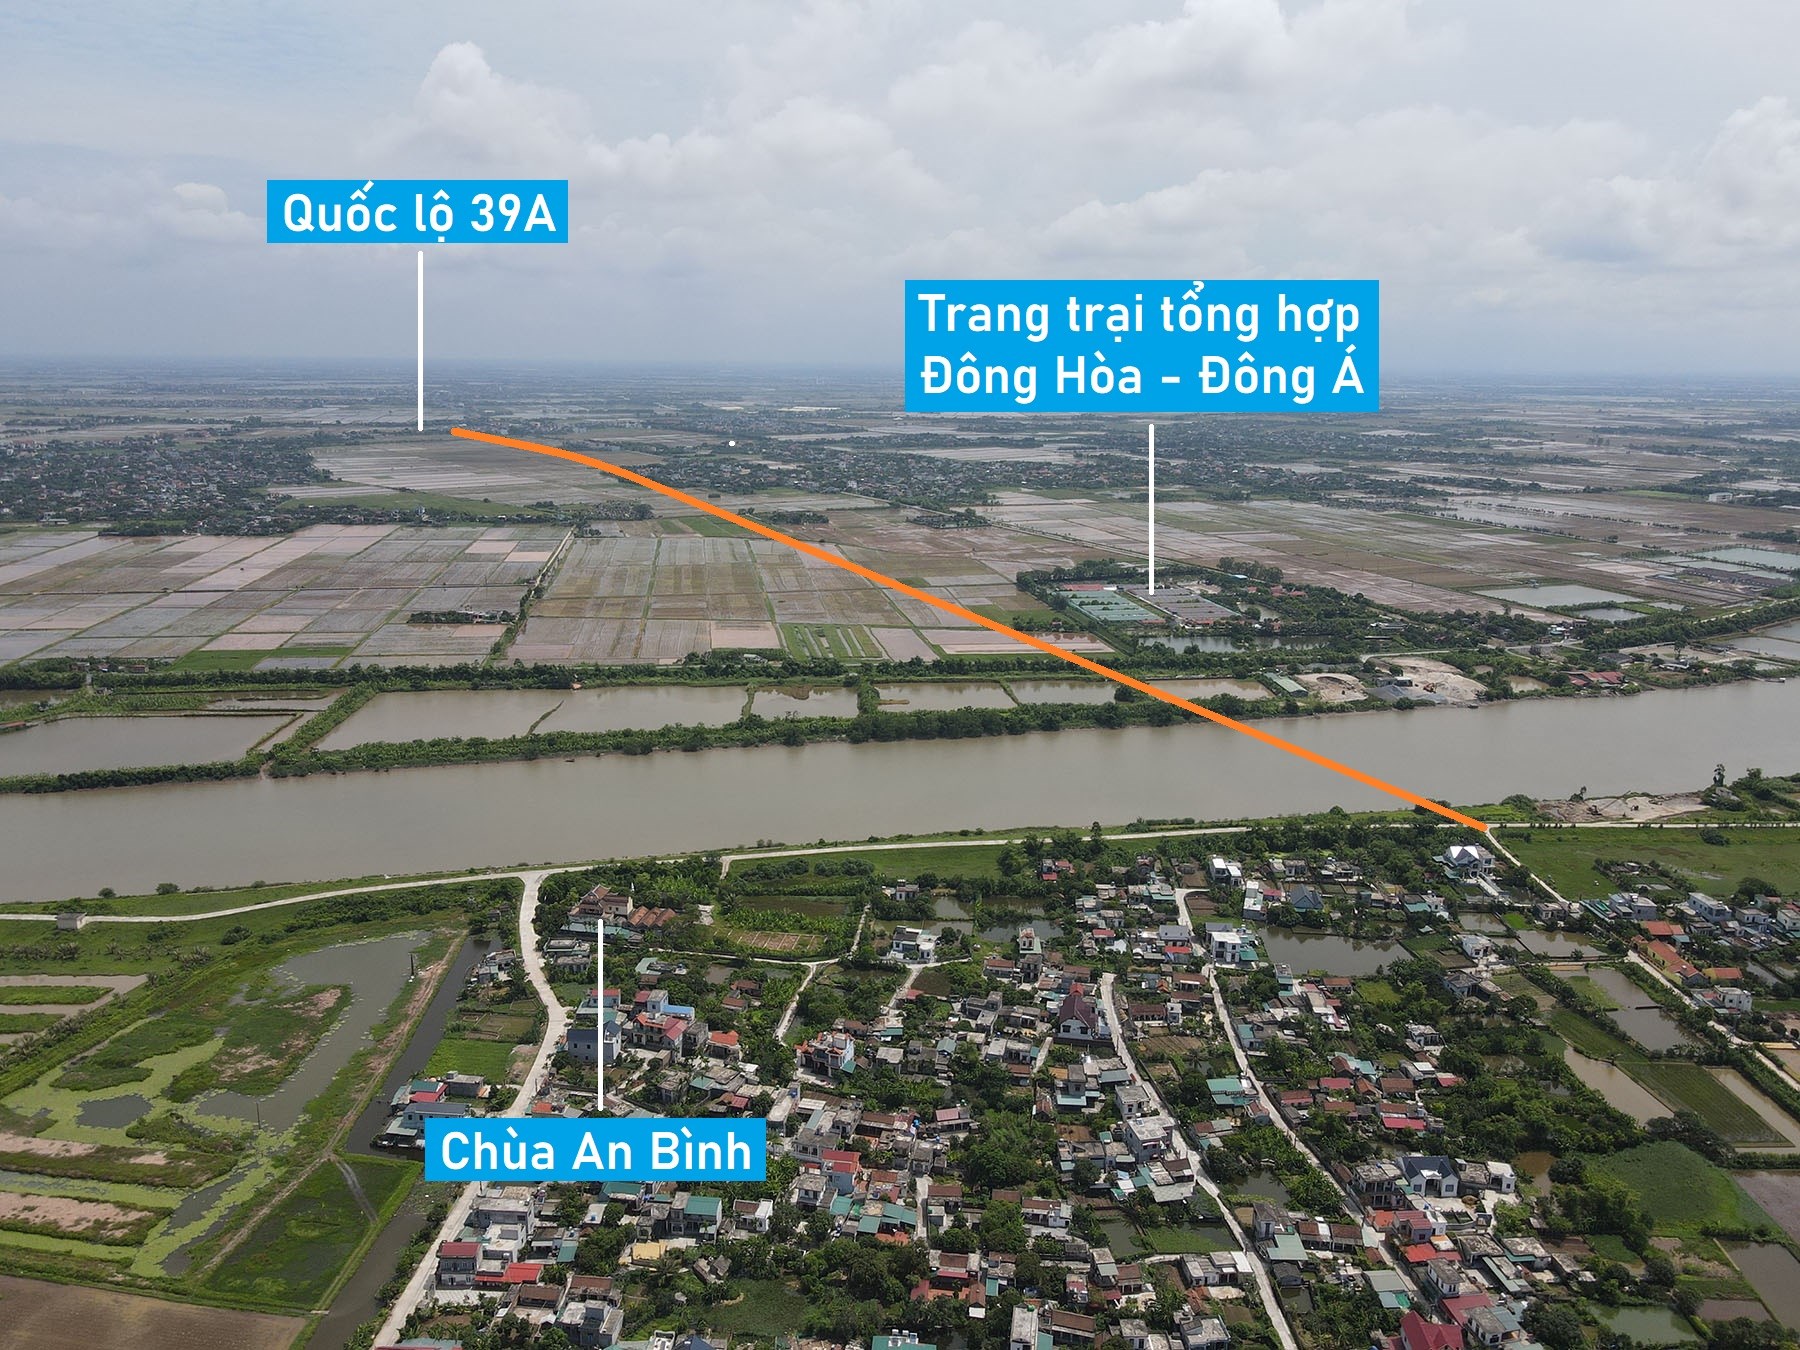 Toàn cảnh vị trí dự kiến xây cầu vượt sông Trà Lý nối huyện Kiến Xương - Đông Hưng trên cao tốc Thái Bình - Hưng Yên